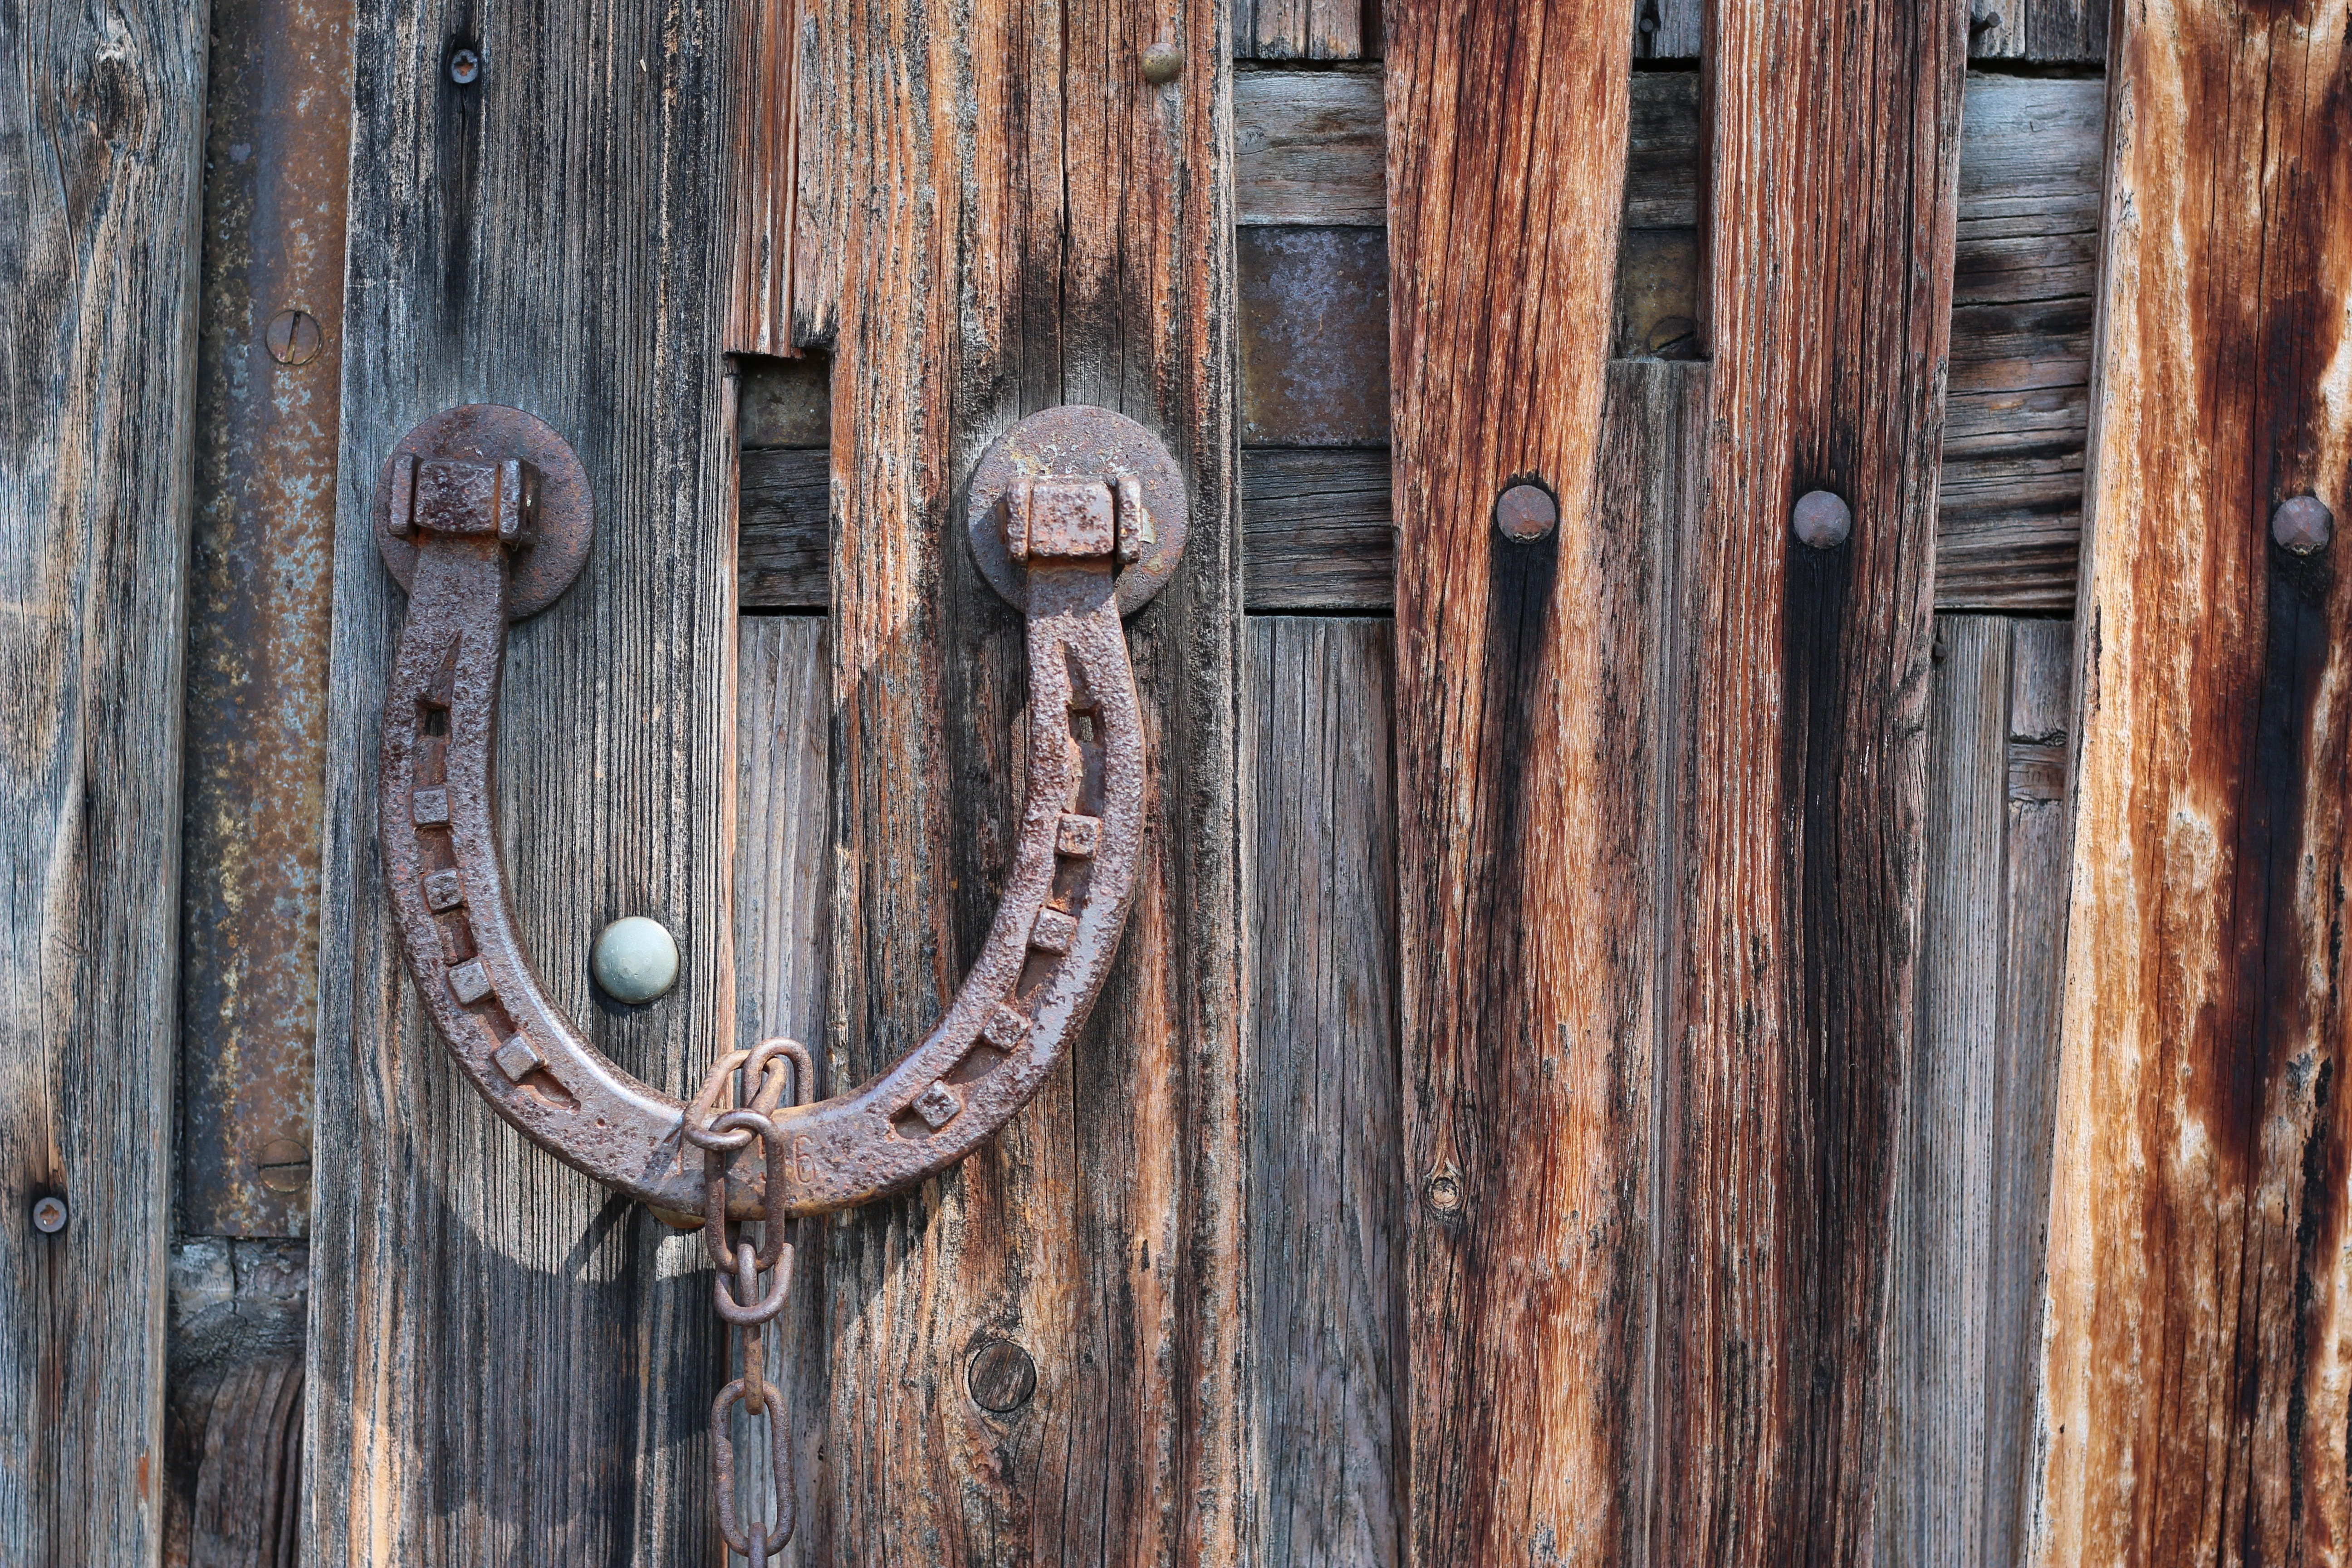 brown steel horse shoe kob, horseshoe, goal, barn, wood, door